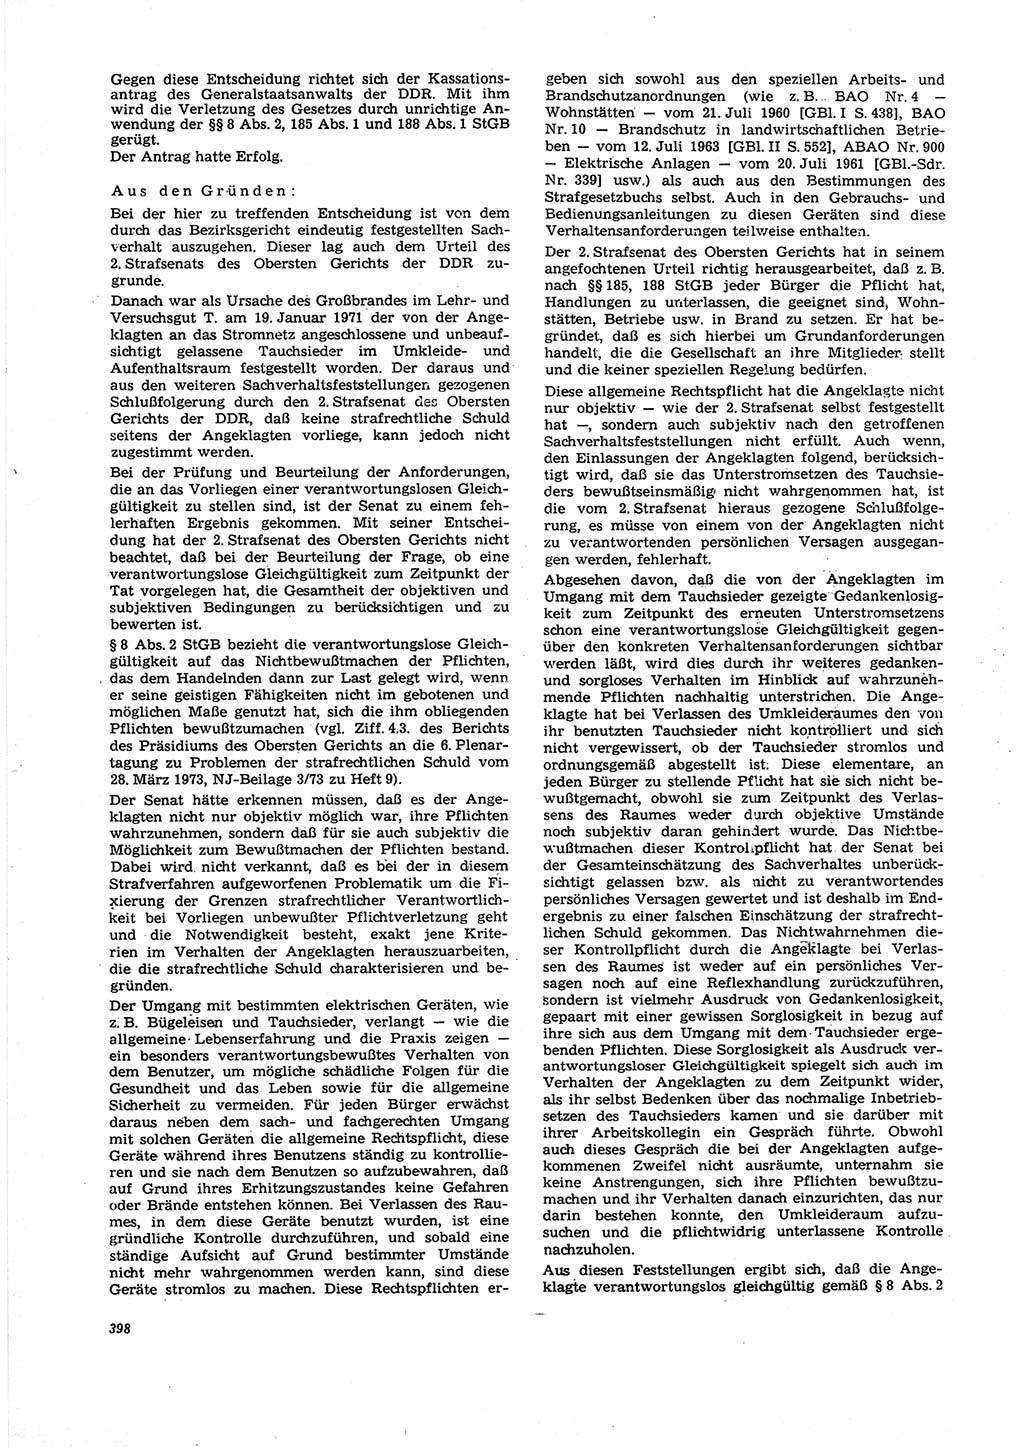 Neue Justiz (NJ), Zeitschrift für Recht und Rechtswissenschaft [Deutsche Demokratische Republik (DDR)], 27. Jahrgang 1973, Seite 398 (NJ DDR 1973, S. 398)